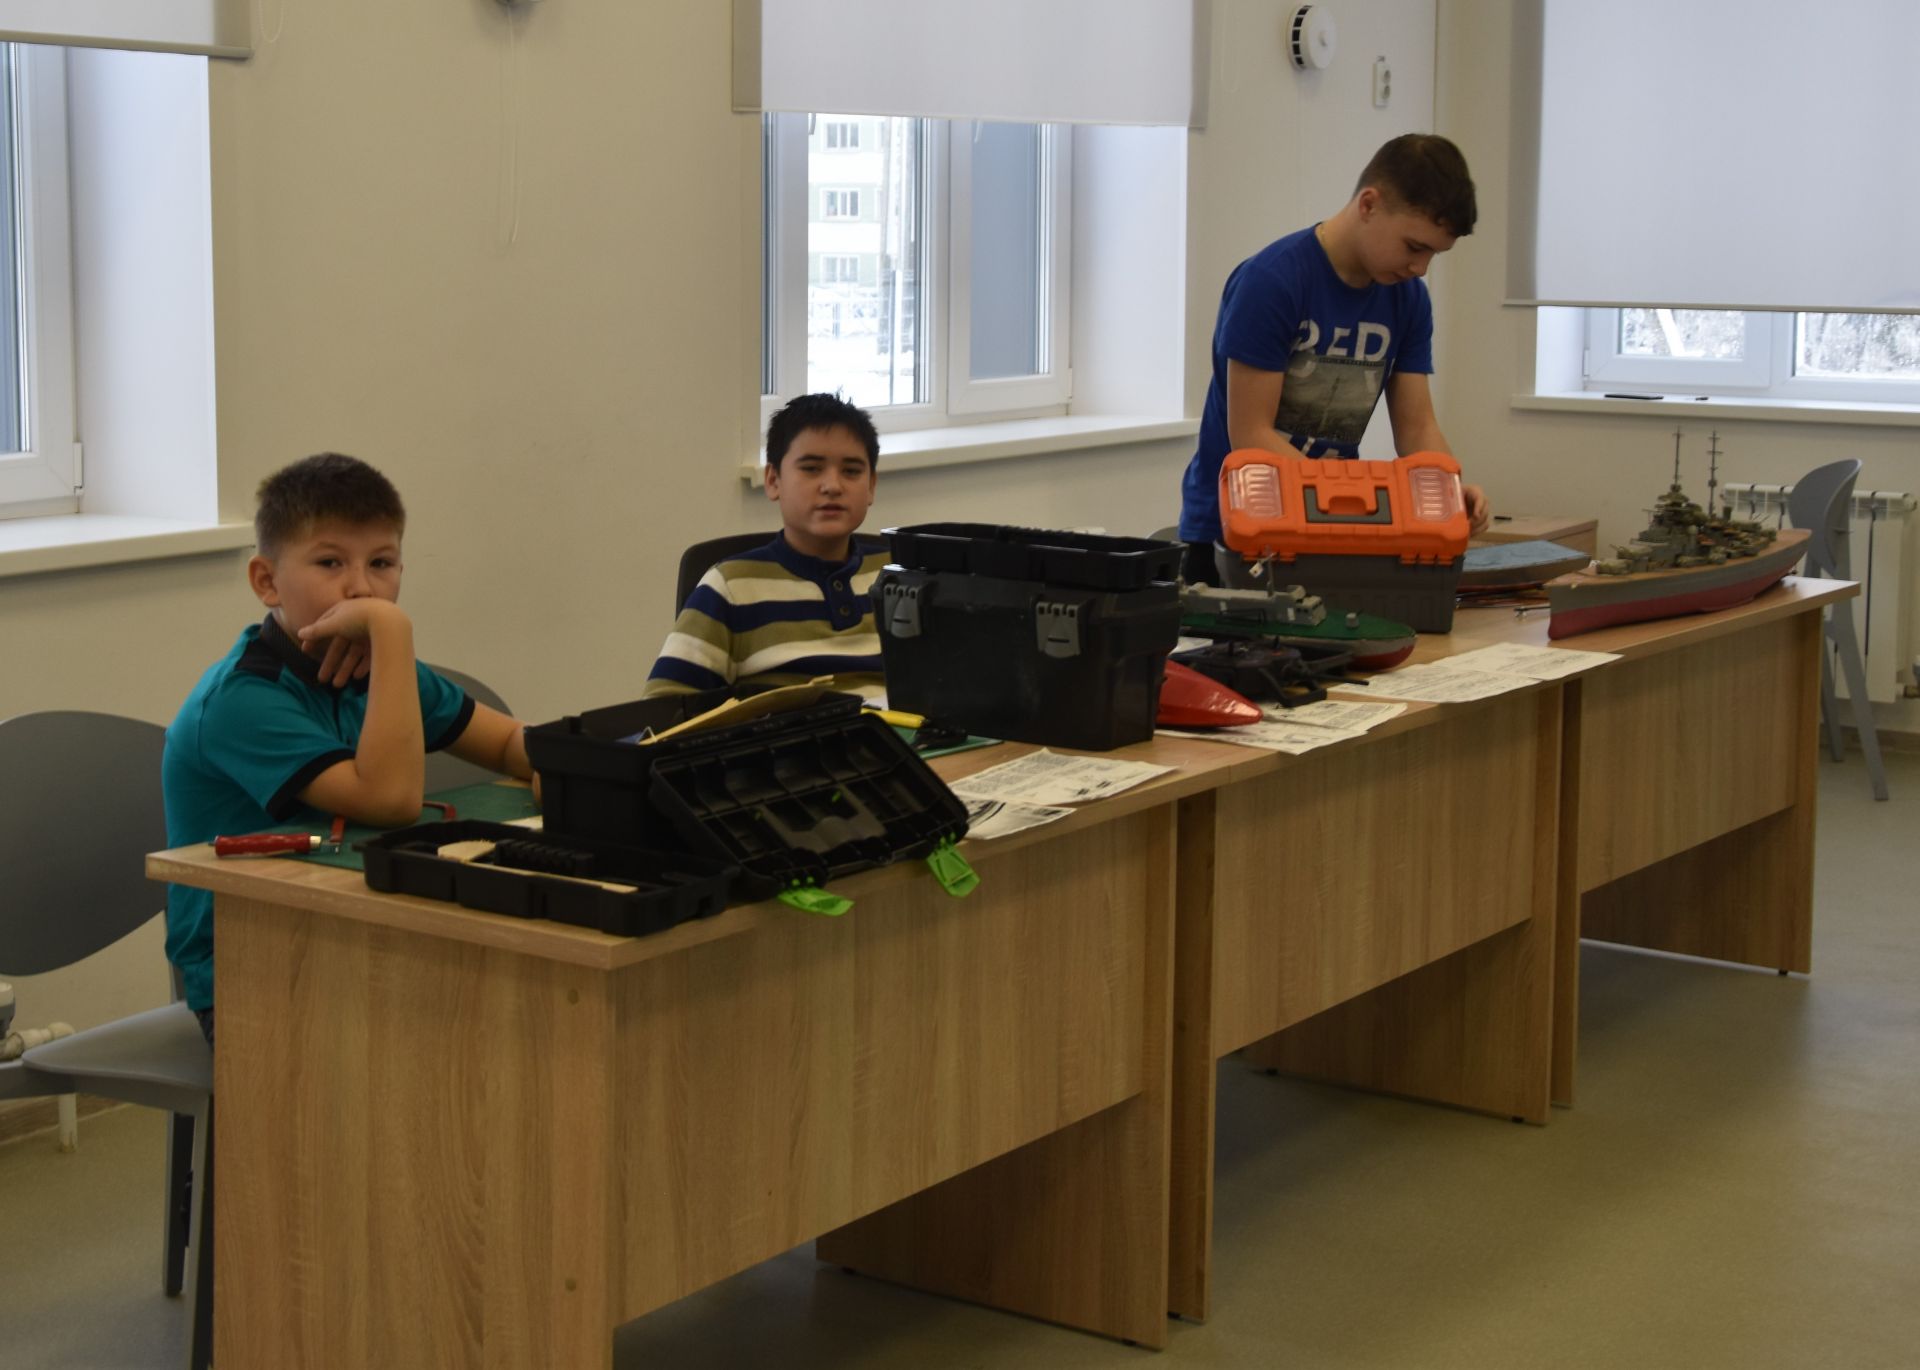 С рабочим визитом в Нурлате побывали депутаты движения «Татарстан – новый век»